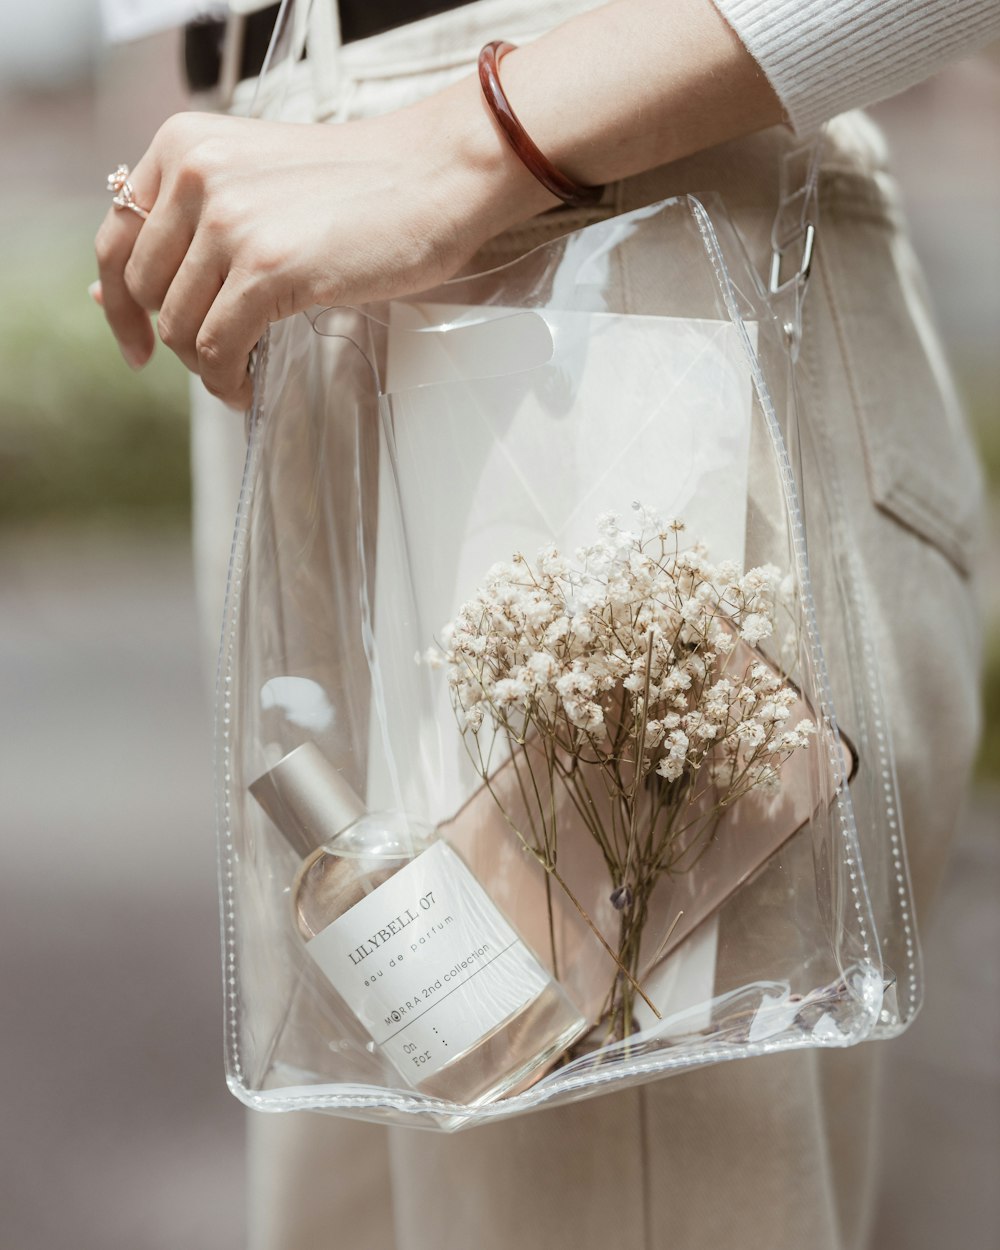 꽃이 든 투명한 가방을 들고 있는 사람